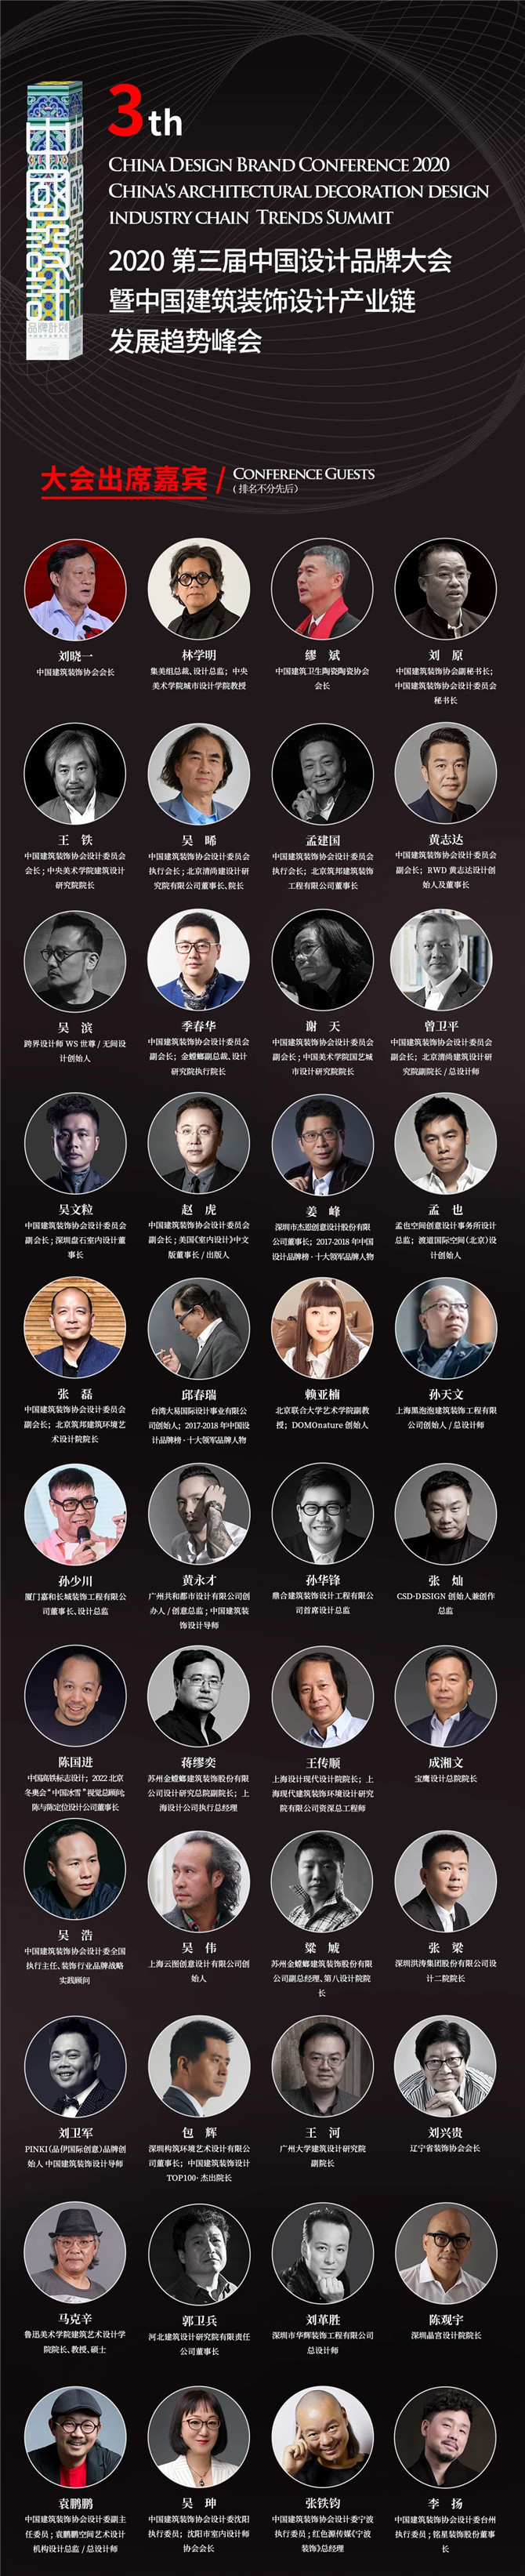 2020第三届中国设计品牌大会大会出席嘉宾.jpg